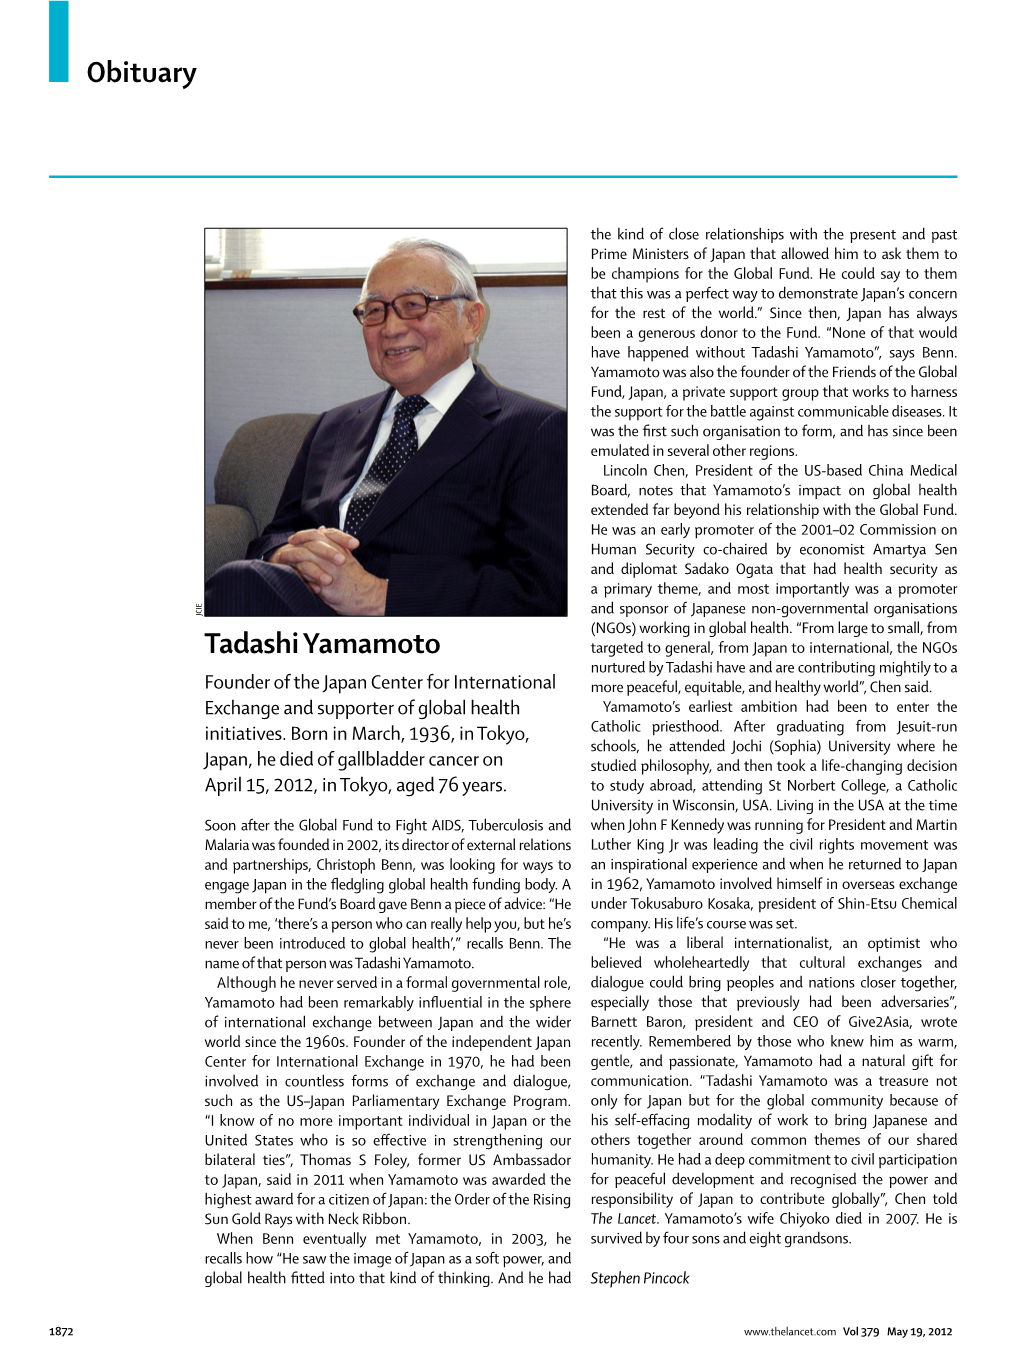 Tadashi Yamamoto Obituary in the Lancet